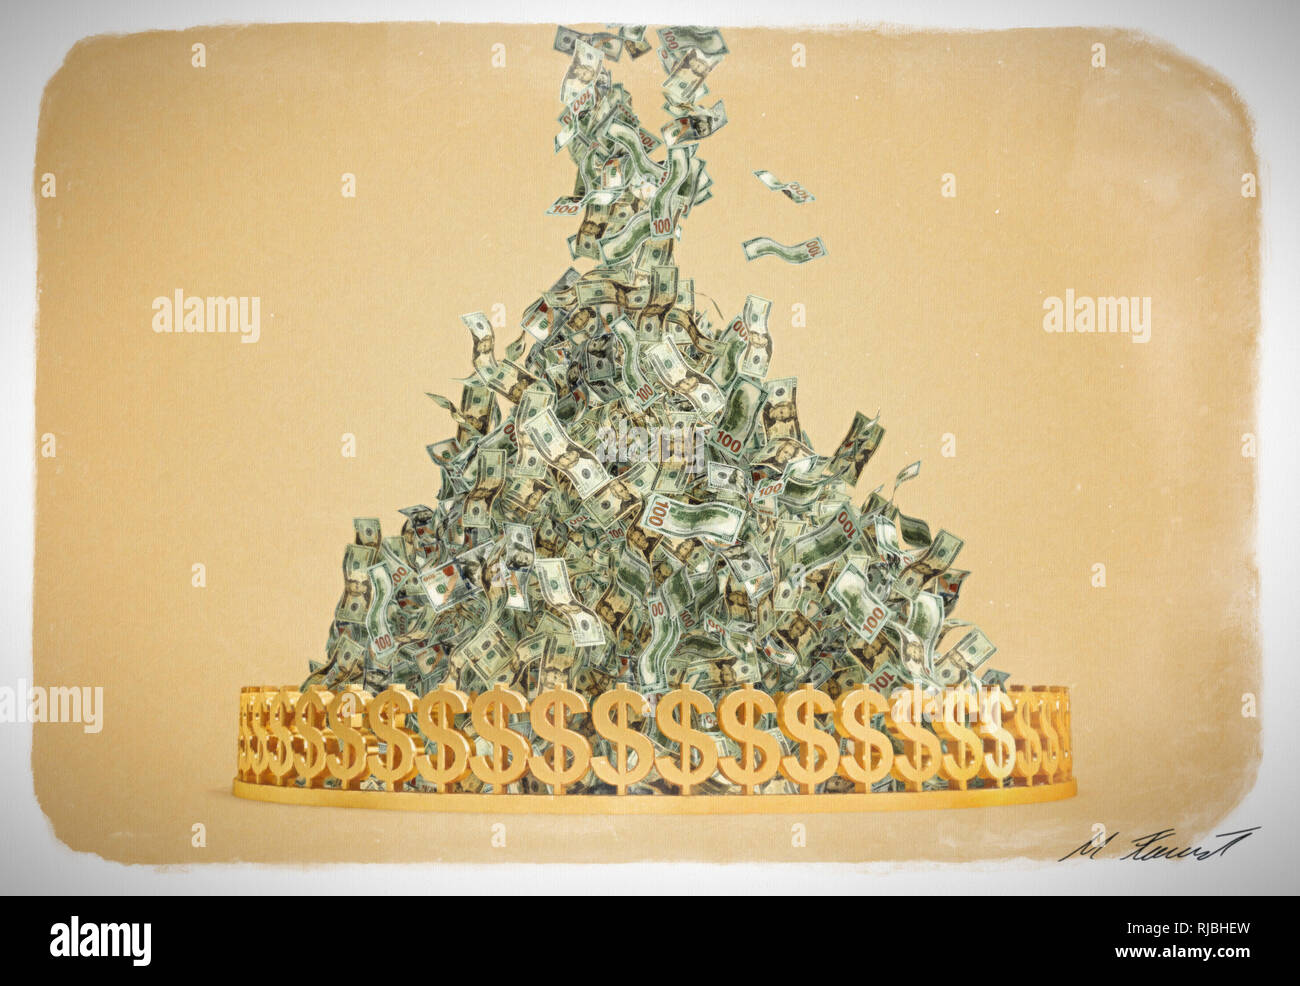 Geld Regen - 20 und 100 Dollar-Scheine hinunter regnen auf einem Haufen Geld - 3D-Rendering Stockfoto